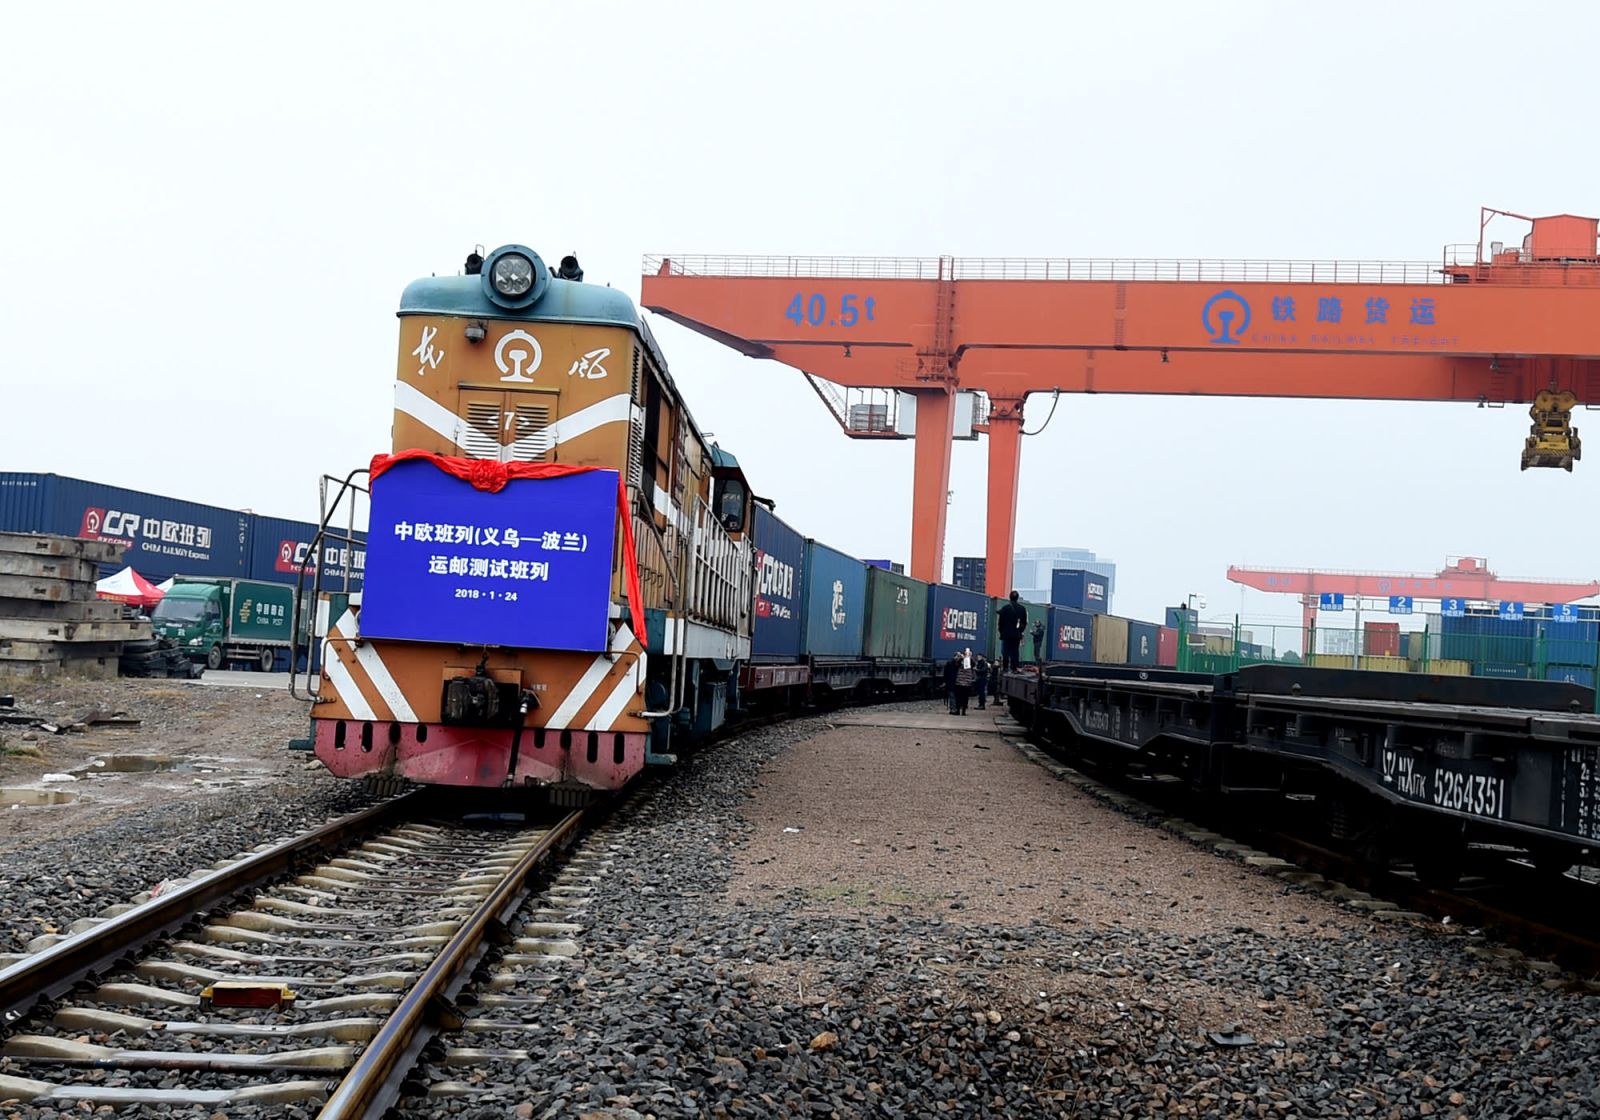 BRI đang tiến hành: Một chuyến tàu chở hàng đi đến Malaszewicze, Ba Lan rời cảng đường sắt tại tỉnh Chiết Giang, Trung Quốc.